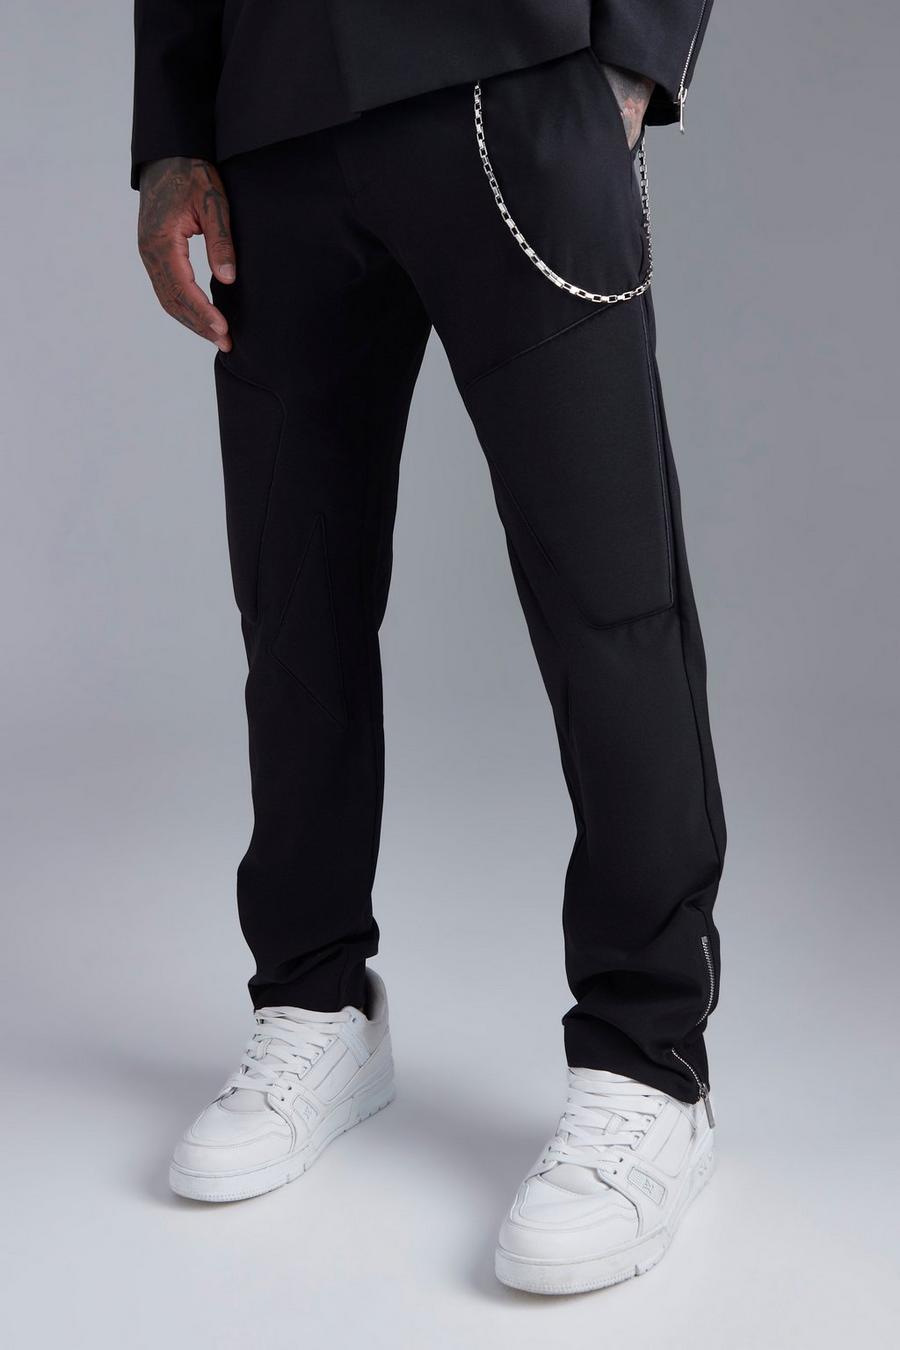 Pantaloni completo Slim Fit con catena e zip, Black negro